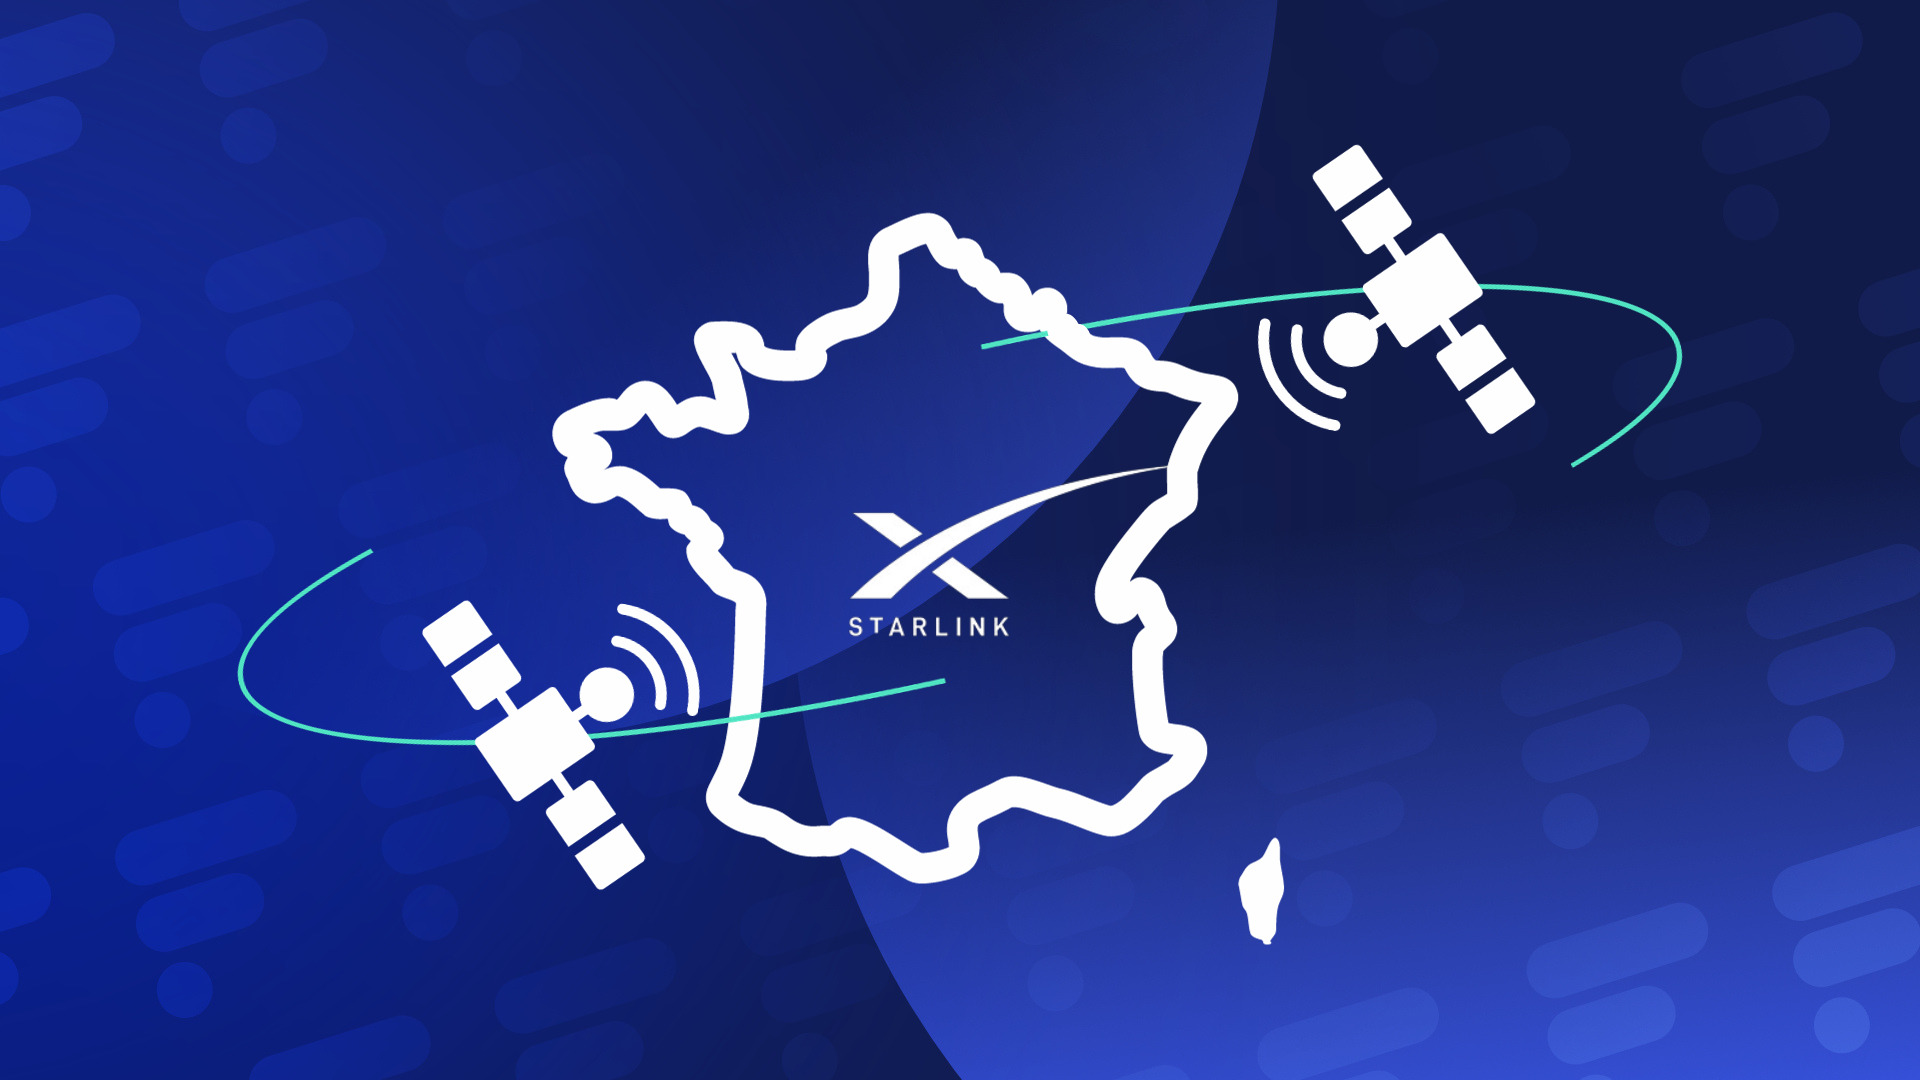 Starlink : Une véritable révolution pour la connexion internet en